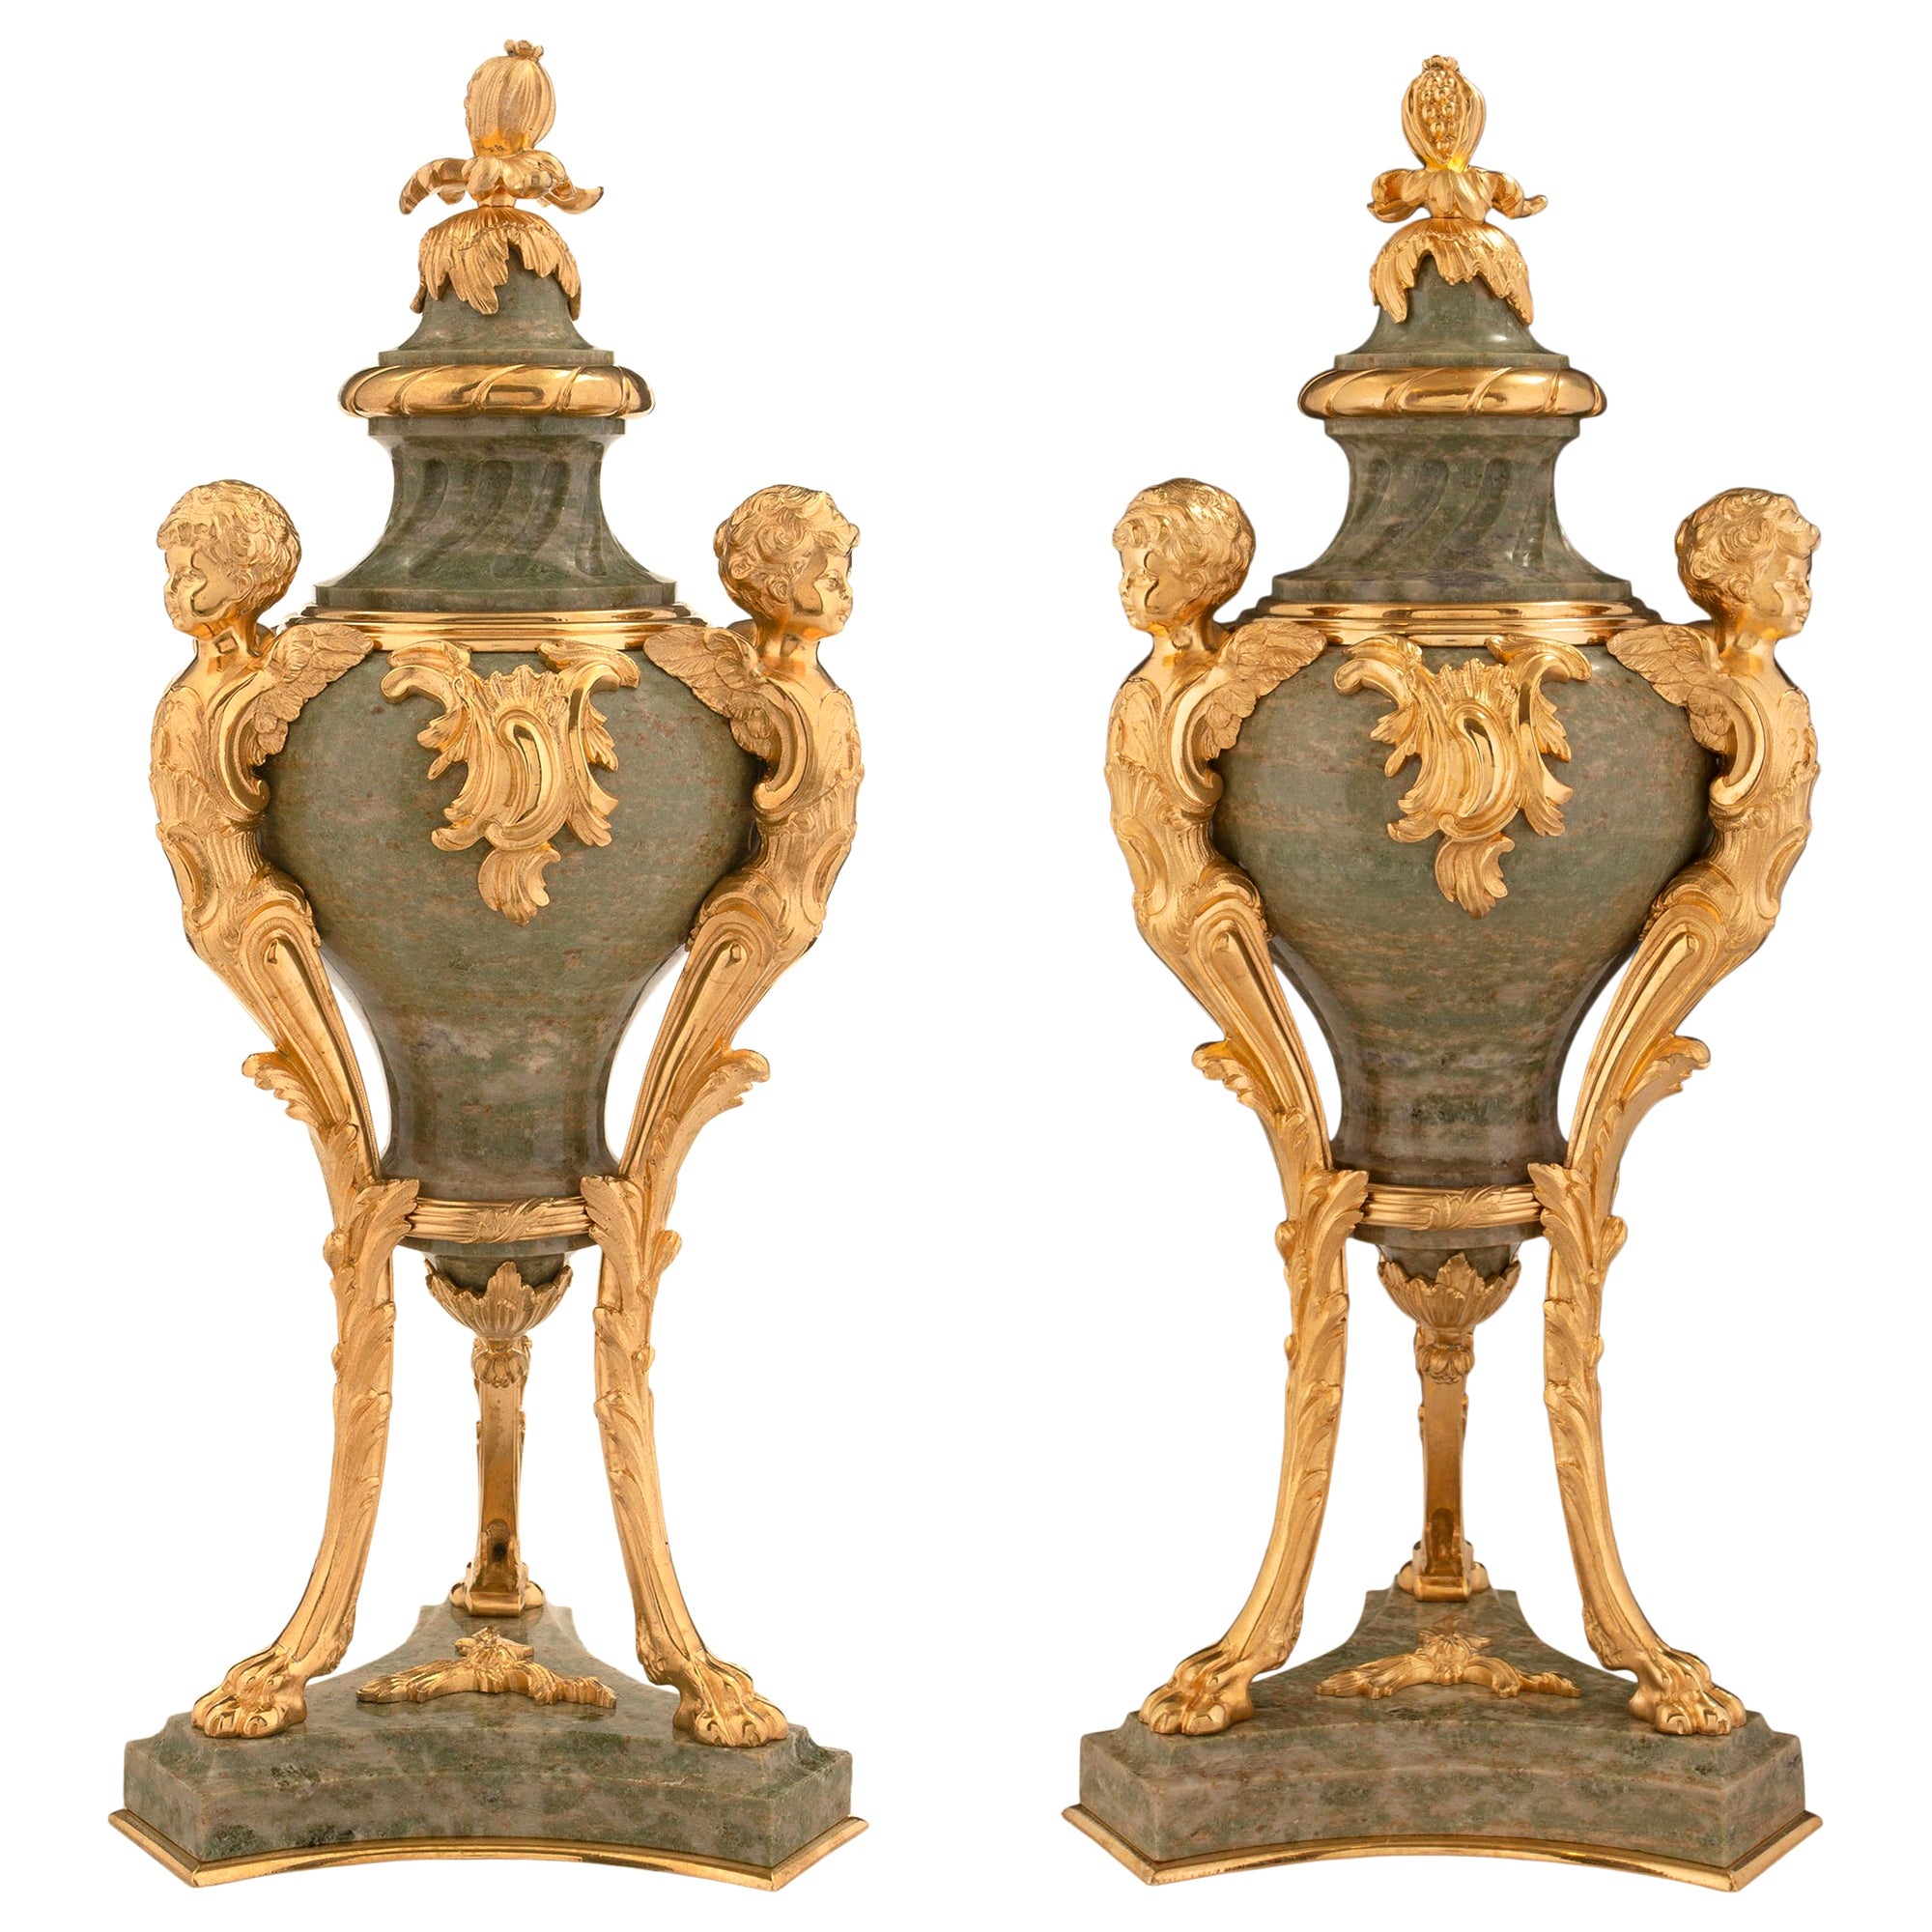 Paire d'urnes à couvercle en marbre vert et bronze doré de style Louis XVI du XIXe siècle français